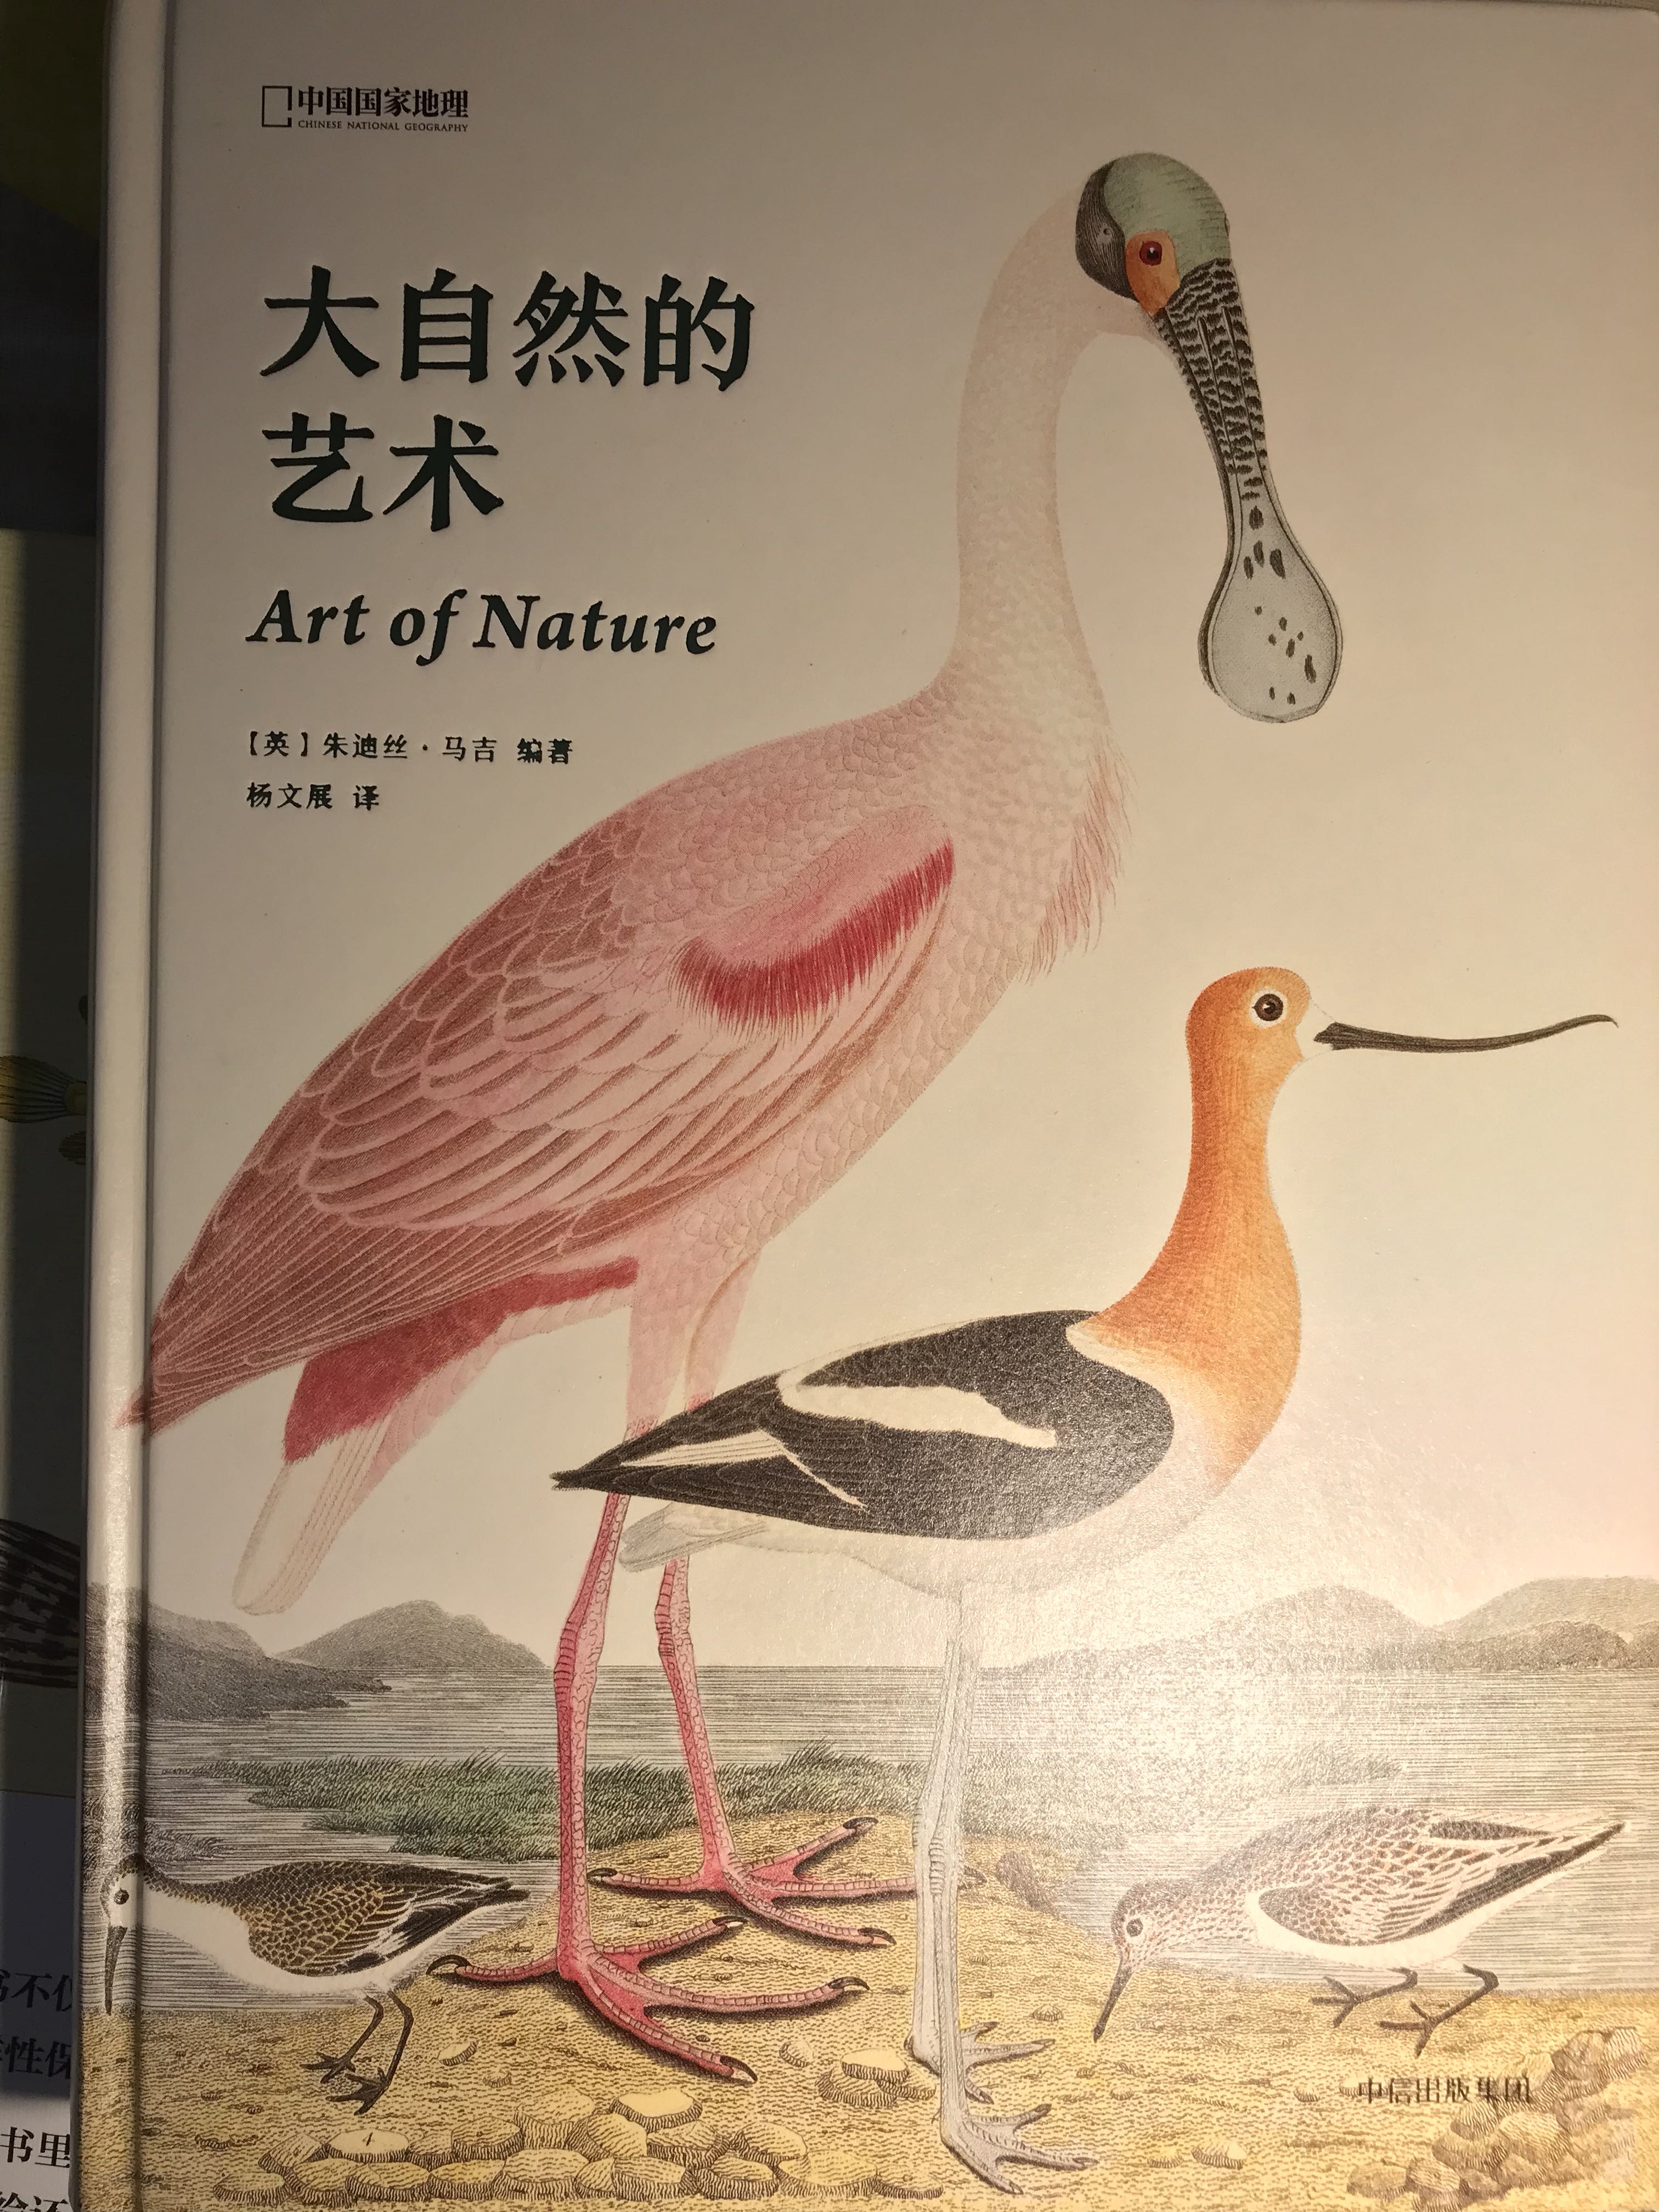 今天收到了这本《大自然的艺术》（Art of Nature），这近似一本游记，里面有很多漂亮的插图，比如图2的火烈鸟（Phoenicopterus minor by C. G. Finch-Davies）。另外，这种动植物手绘图鉴（图3，Gyrfalcon , Falco rusticolus,1827）是西方绘画里少数散点透视的品种，非常类似中国的工笔花鸟（图4，于非闇《海青击鹄图》）——东方艺术追求事物的恒常样貌，而非某个主体的片刻感受，这很像科学试图追求的那种境界。但遗憾的是，东方人将对这种艺术化的“恒常”追求上升到了形而上学的高度，他们认为抵达这种境界的途径埋藏在精神世界之中，因为在极大程度上忽略了主体的片刻感受，或者说经验世界的价值，冥想和玄思是东方人最欣赏的认知方式——这倒也是情理之中的事情，毕竟“恒常”是感官不能体验的抽象概念。但更加现实的情况是，人类要认识这个世界，除了观察别无它法，那种形而上学的对恒常的纯粹追求在艺术上可能达到美妙的盛境，但作为认知，带来的固执偏见远远多于真知灼见。——我在干什么，我只是想说我喜欢火烈鸟，我超喜欢火烈鸟，这种鸟没下巴扁嘴地包天，